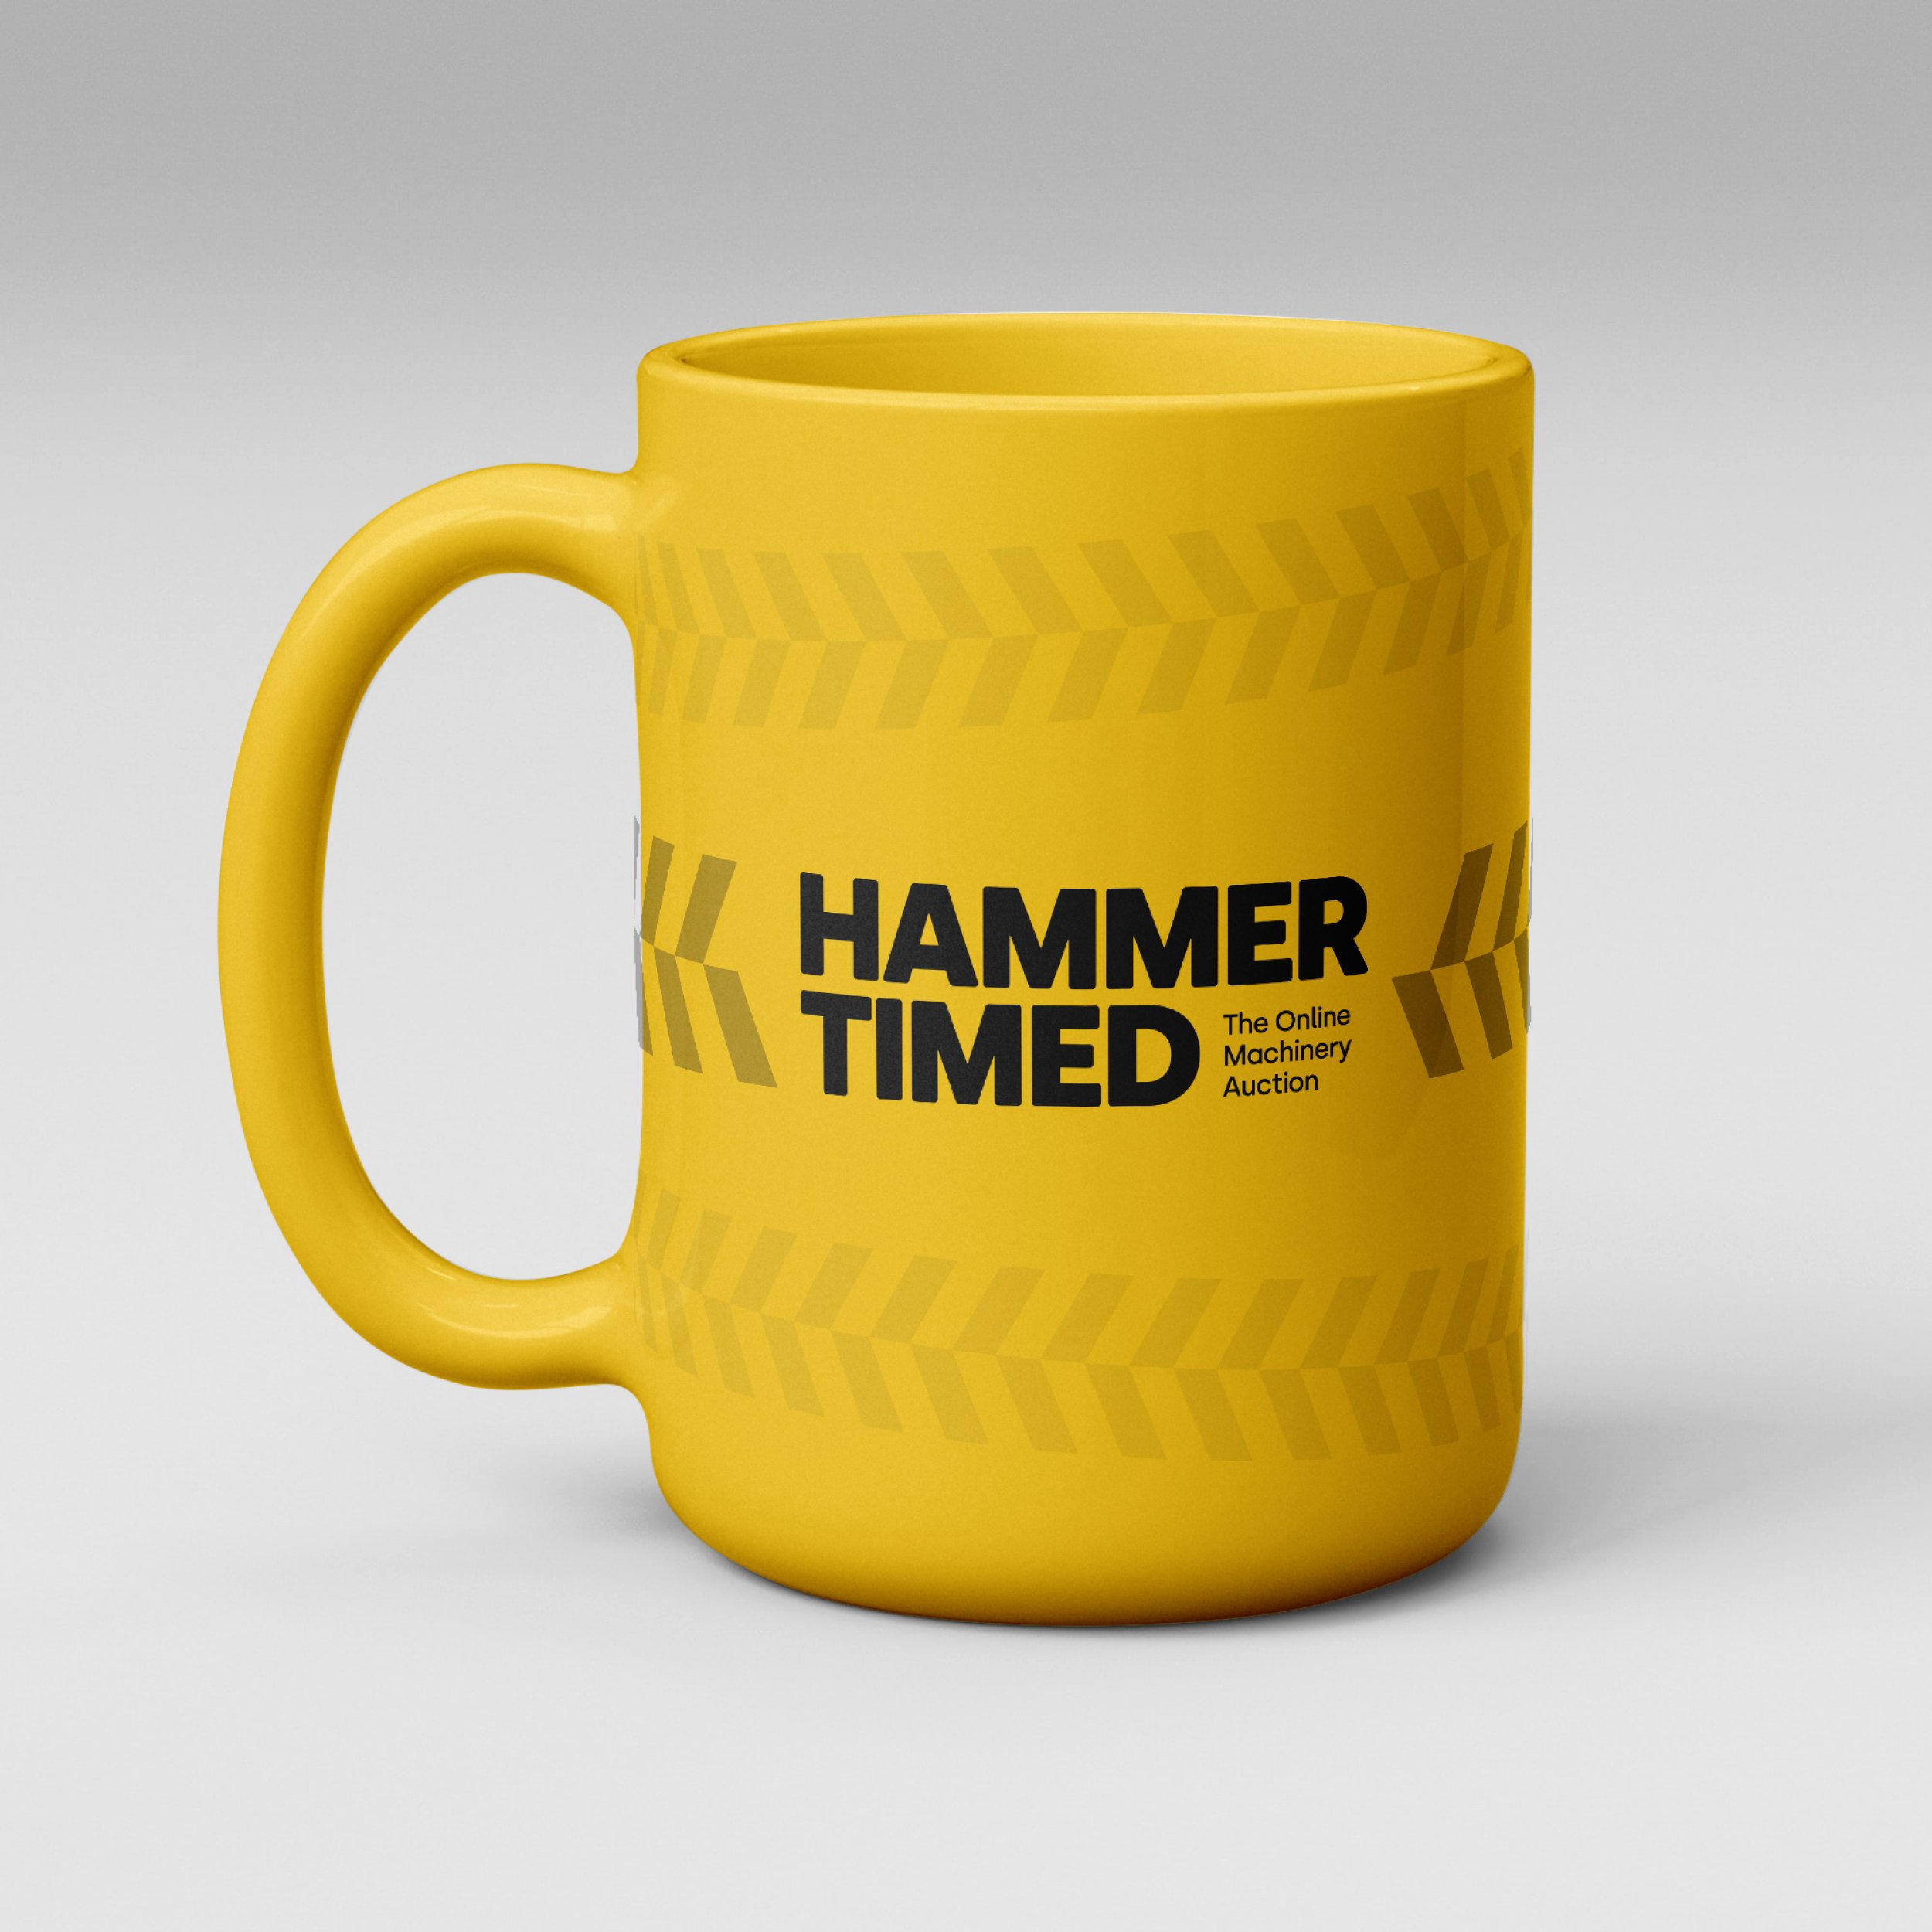 HammerTimed-4.jpg